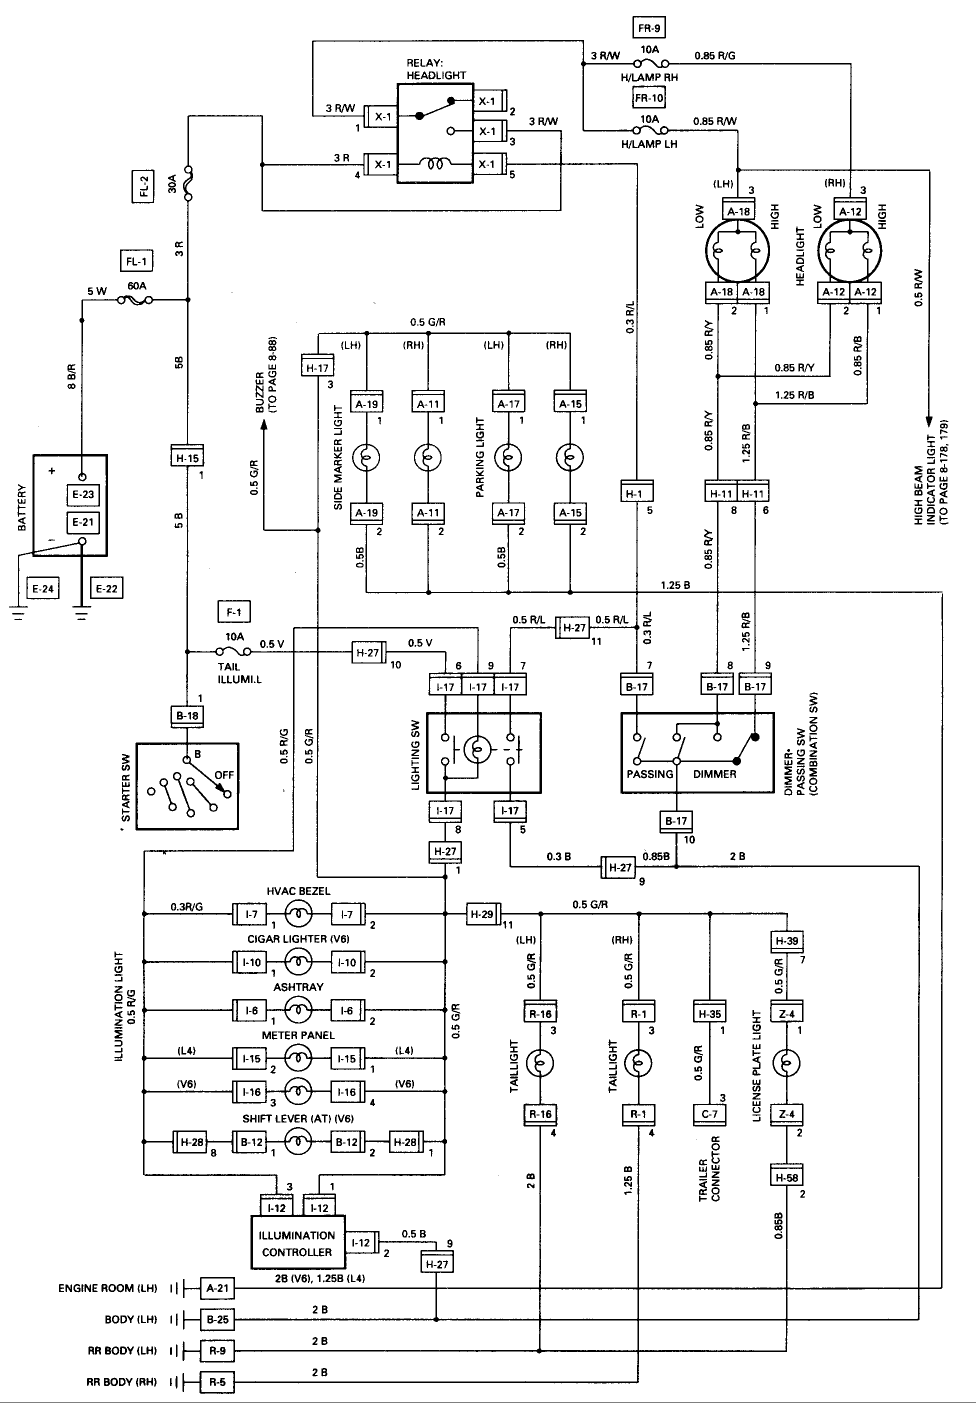 Wiring Diagram: 31 2001 Isuzu Npr Wiring Diagram